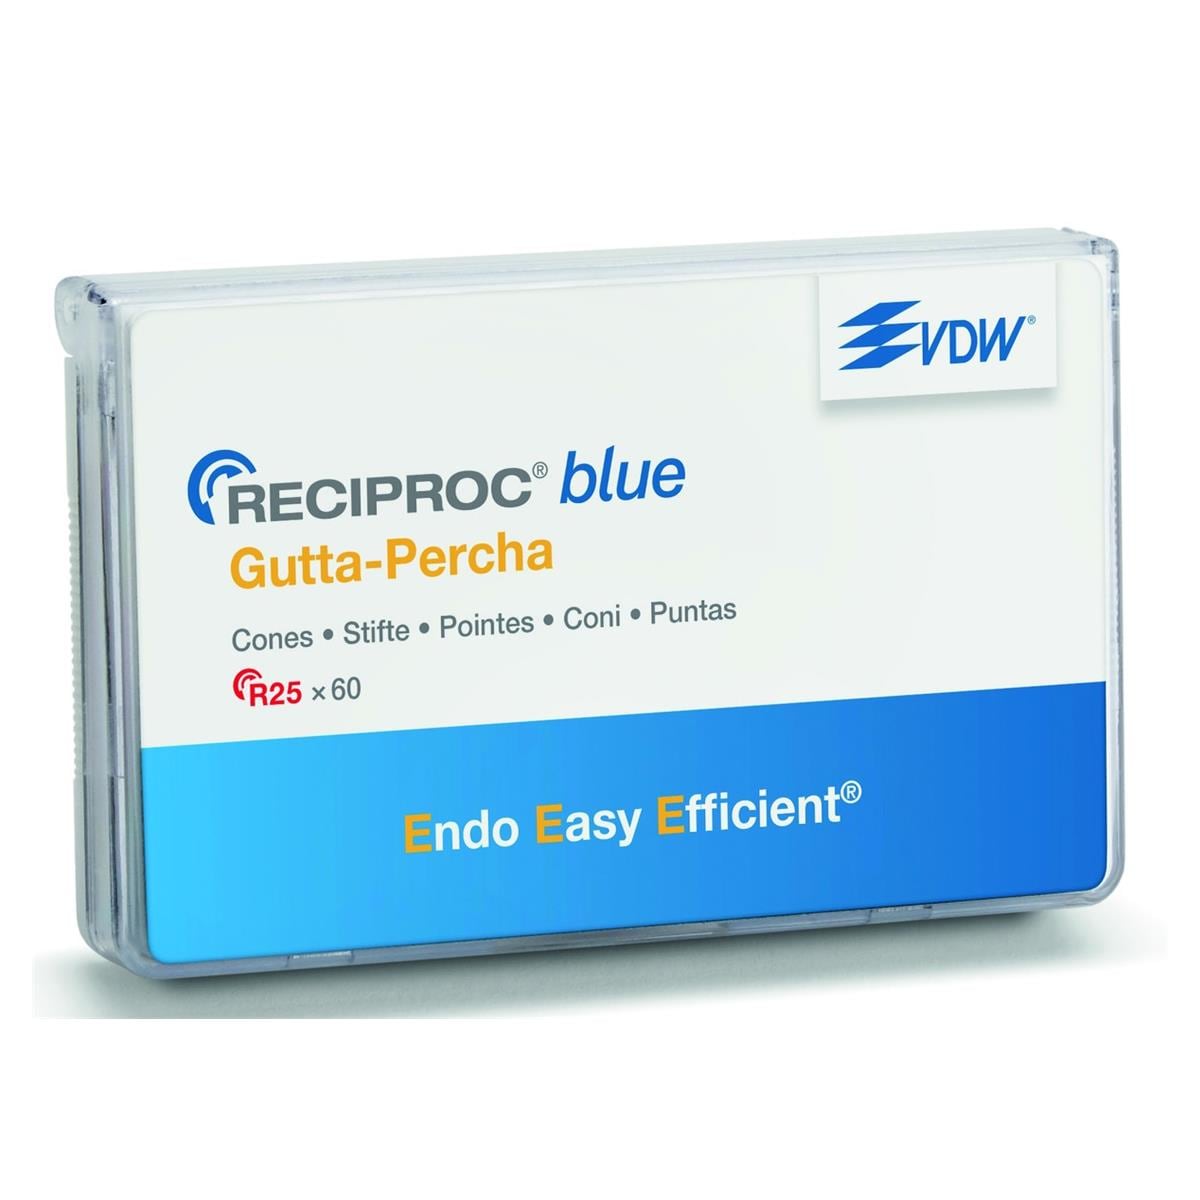 Pointes Gutta Percha Reciproc Blue DENTSPLY SIRONA - R25 - Bote de 60